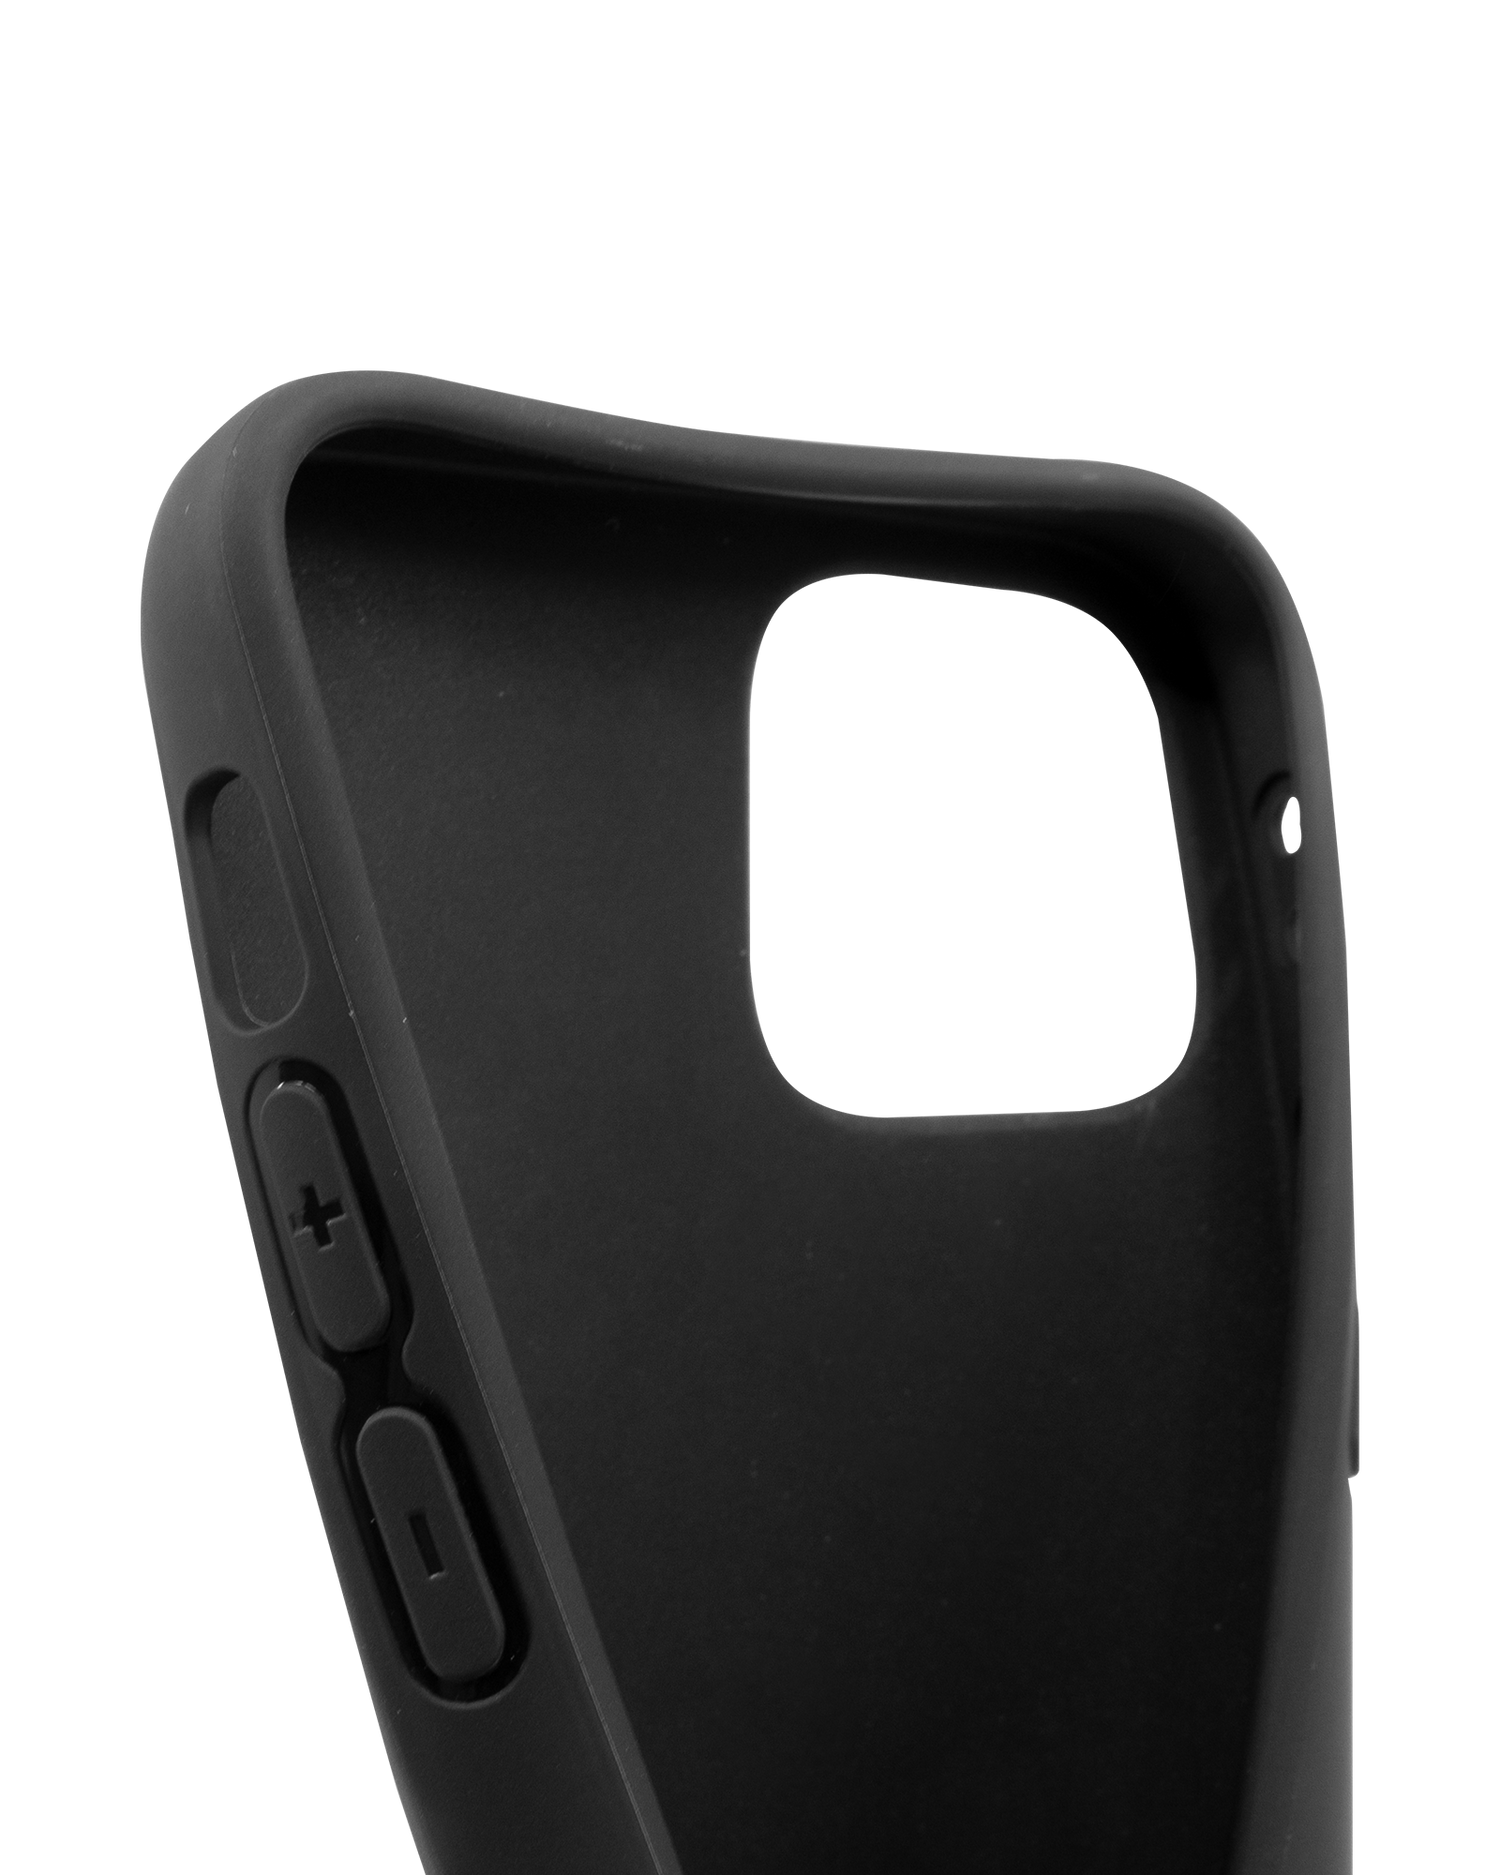 Schwarze Silikon Handyhülle für iPhone 12 mini: Sehr elastisch